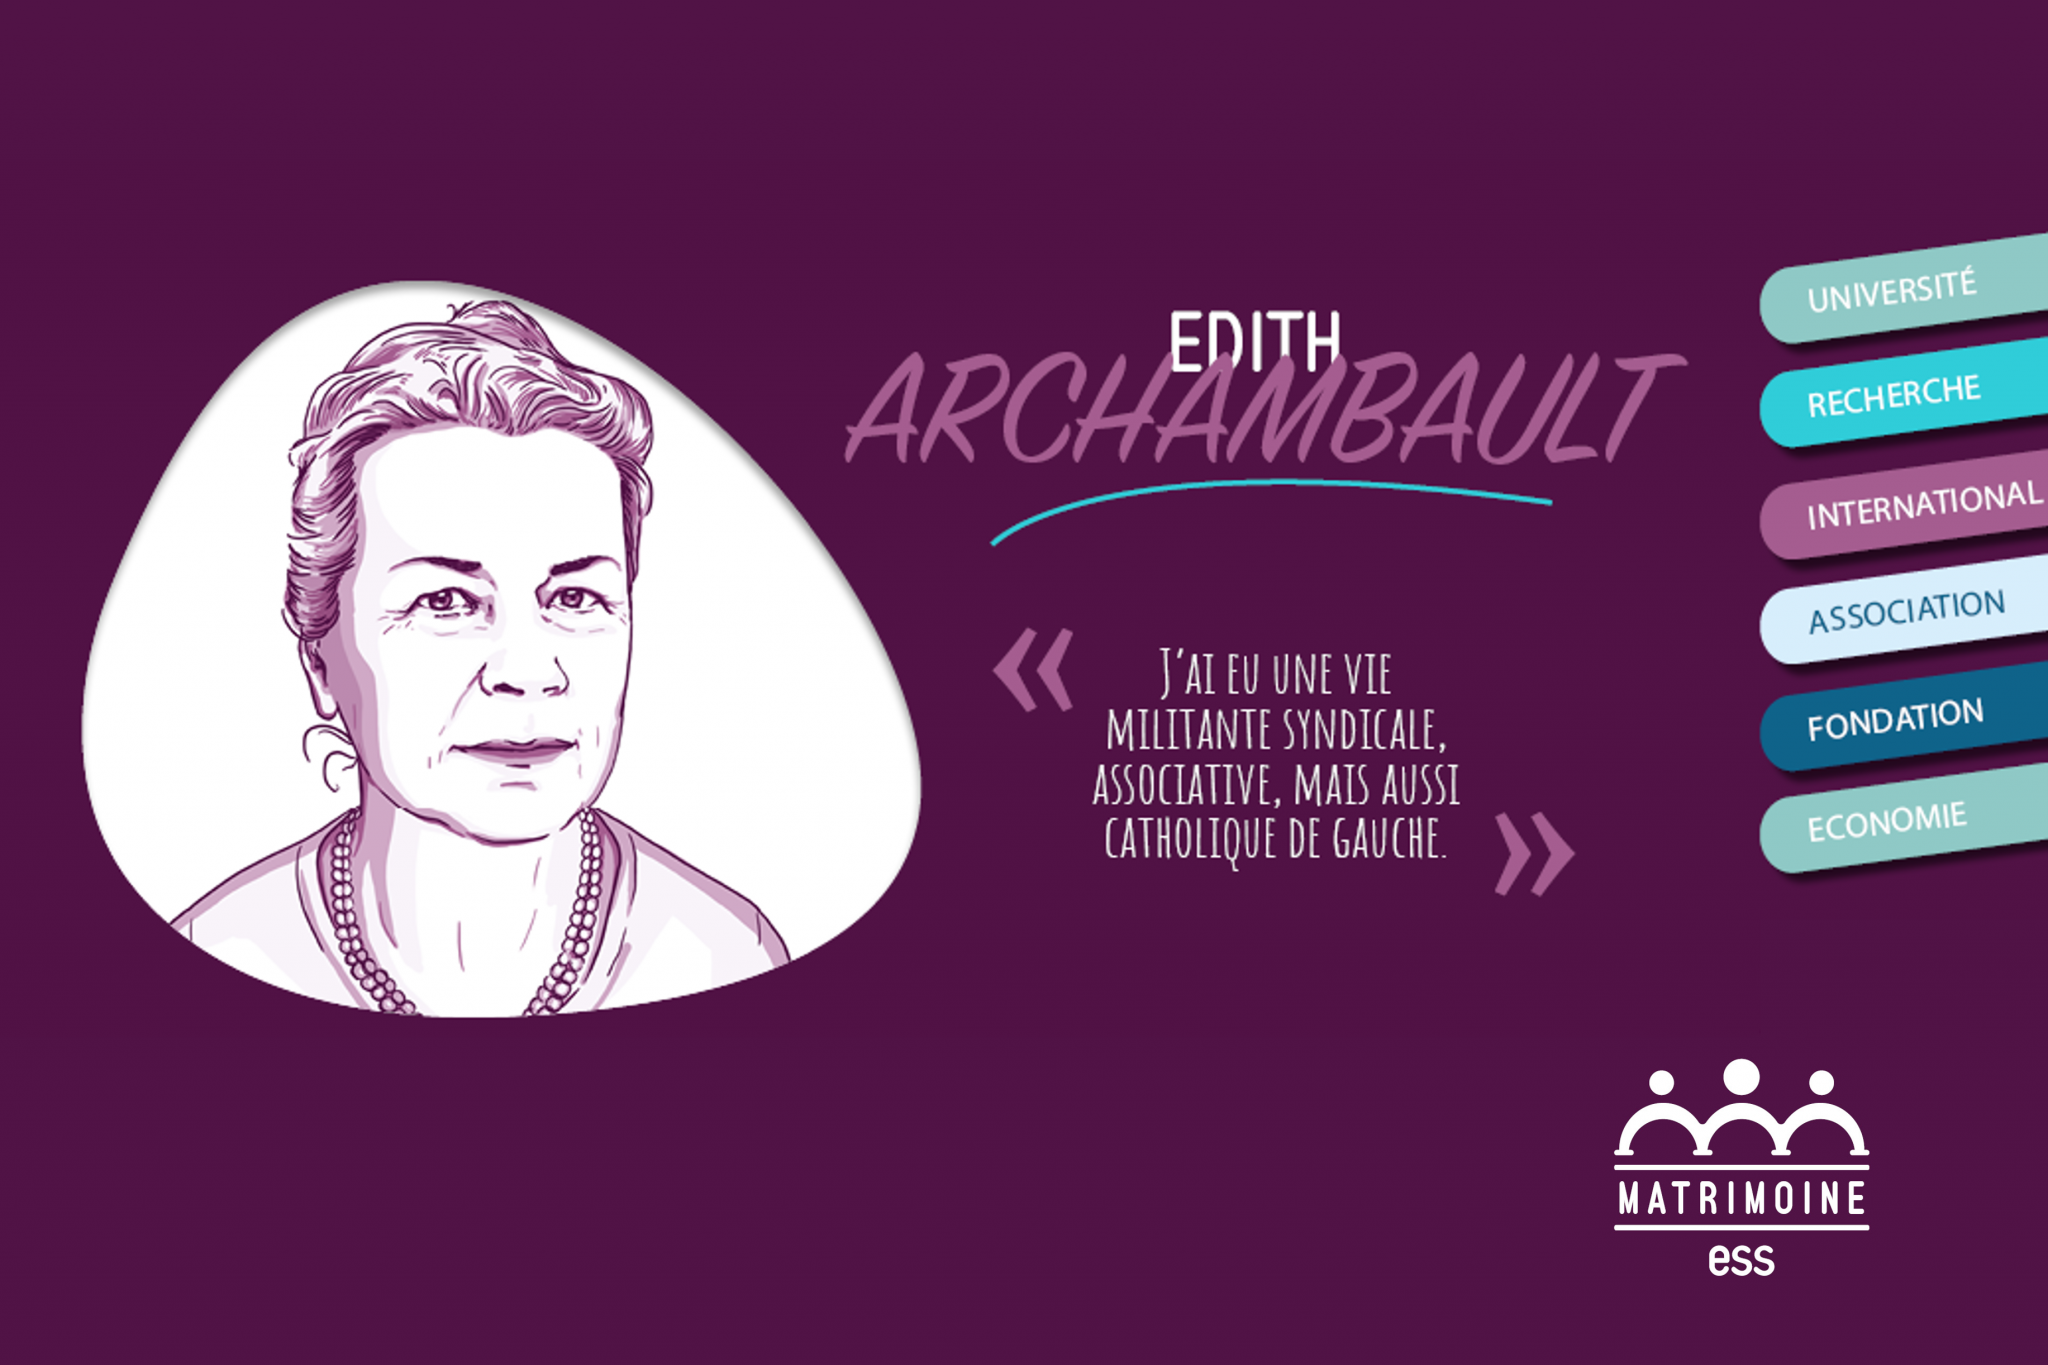 Portrait d'Edith Archambault, professeure émérite à Paris 1 Panthéon-Sorbonne